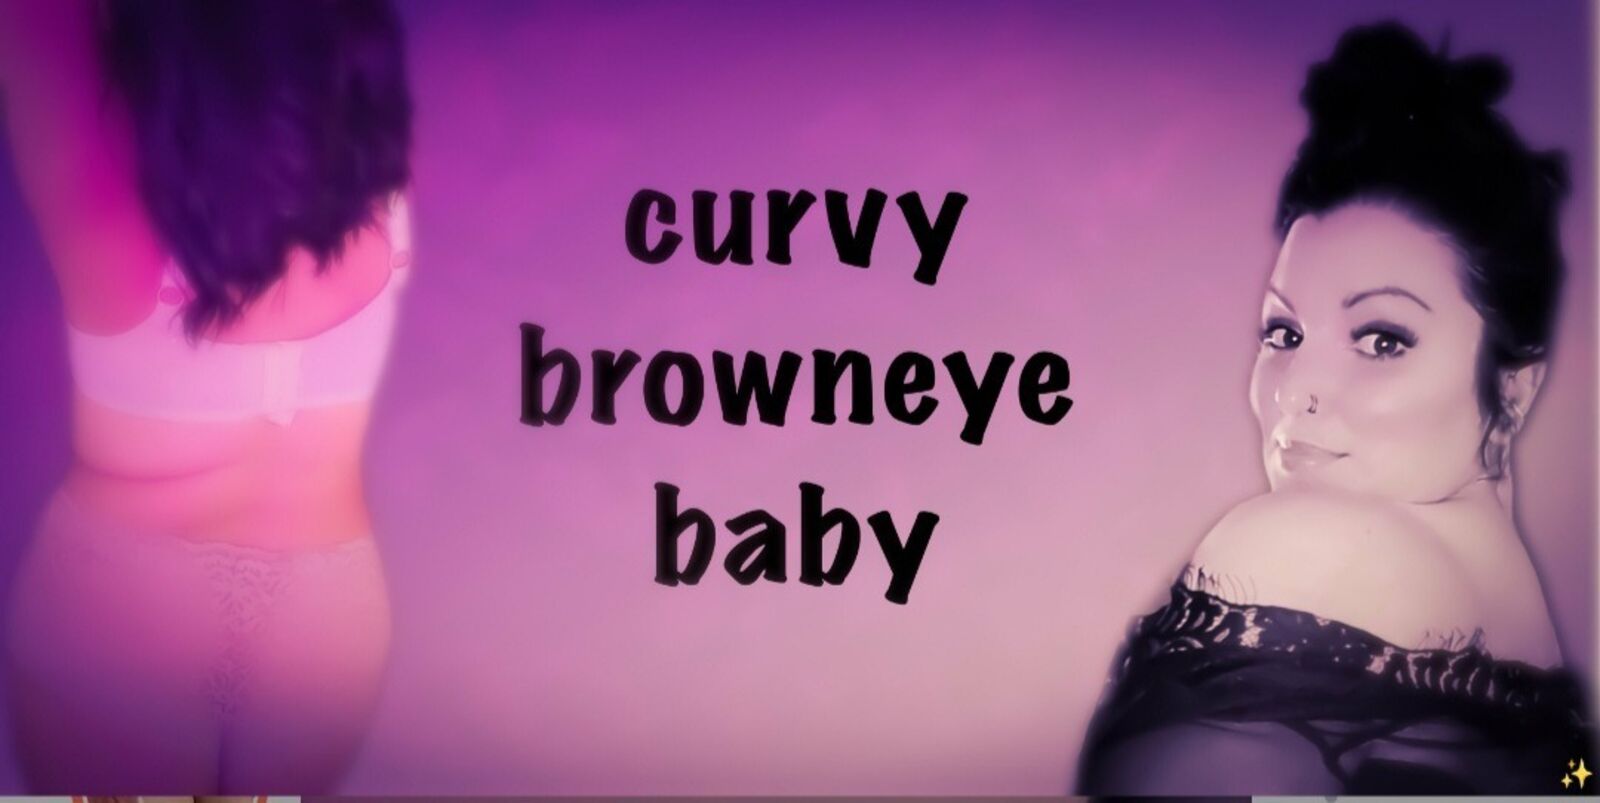 See Curvy browneye baby profile